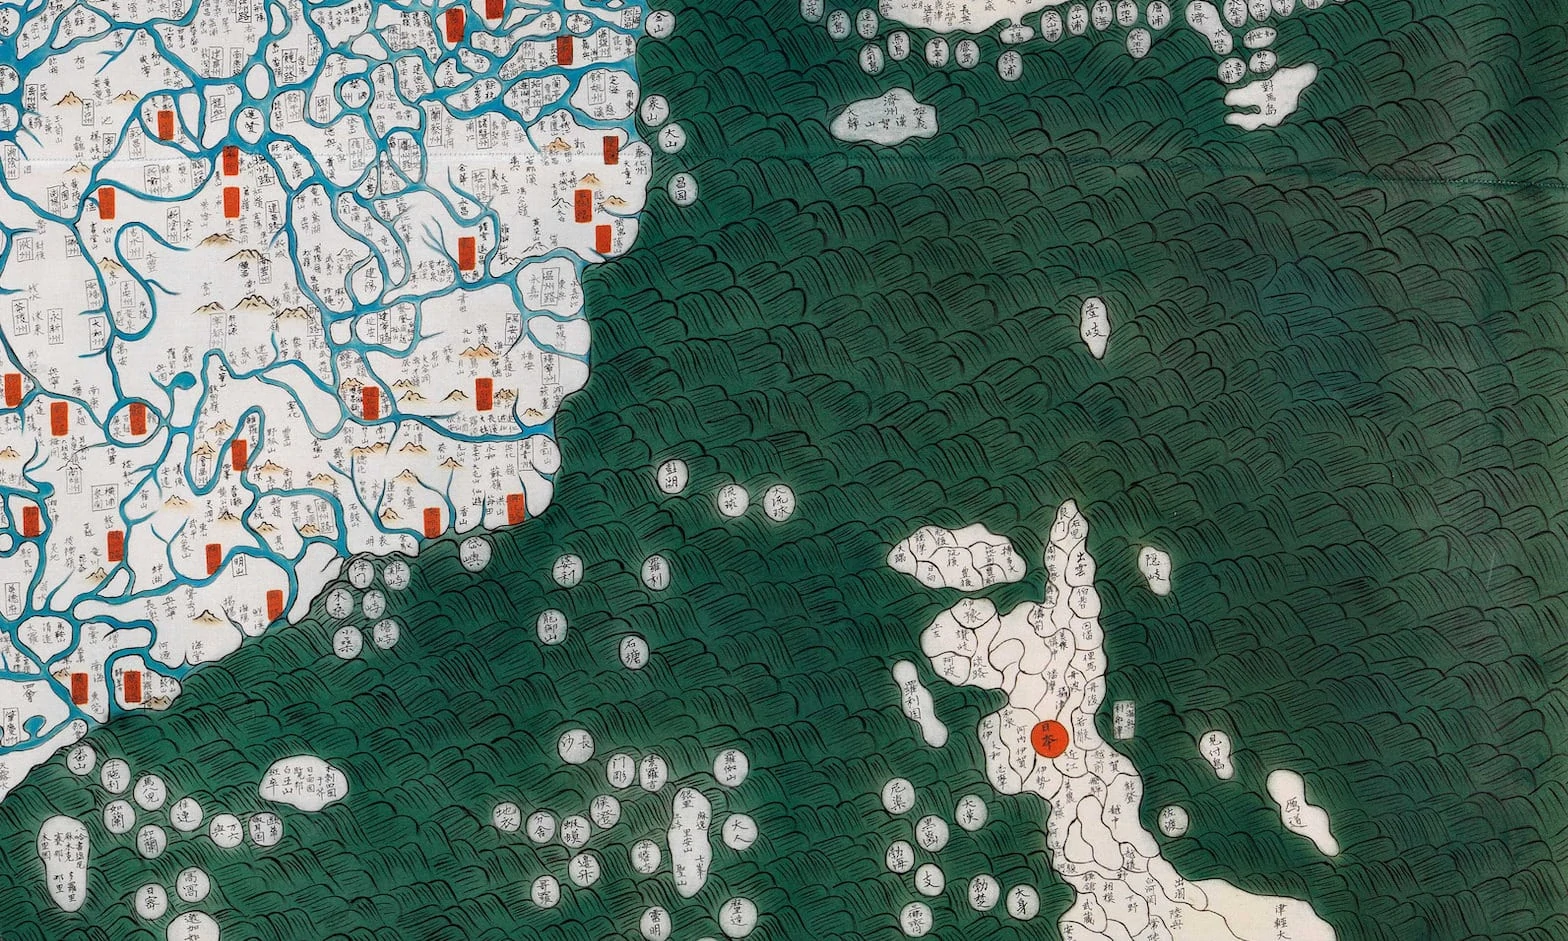 Illustration pour la sécurité des mers orientales scan de la Red Team Analysis Society, affichant la carte historique Honil Gangri